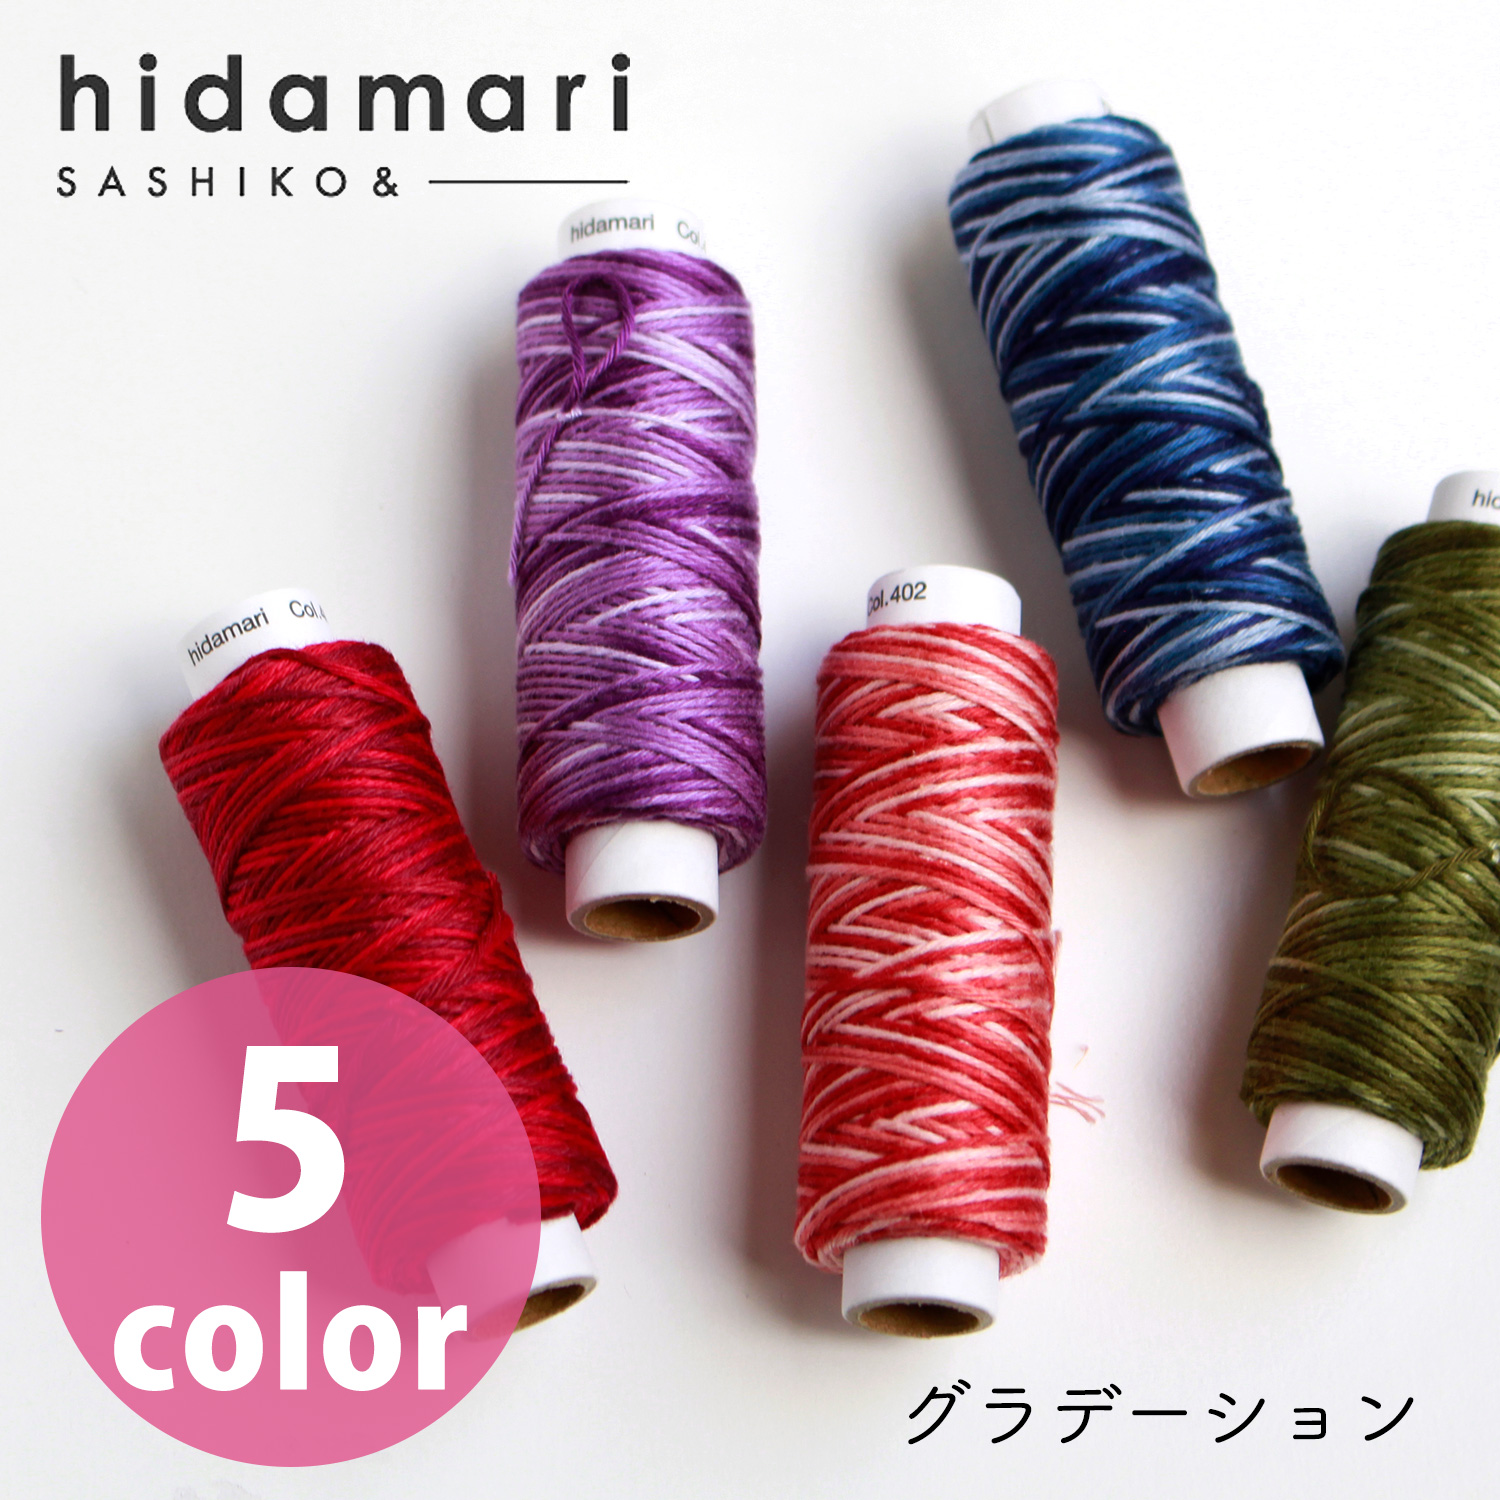 【リニューアル】CS122302-401~405 コスモ 刺し子糸 (グラデーション) - hidamari - (個)